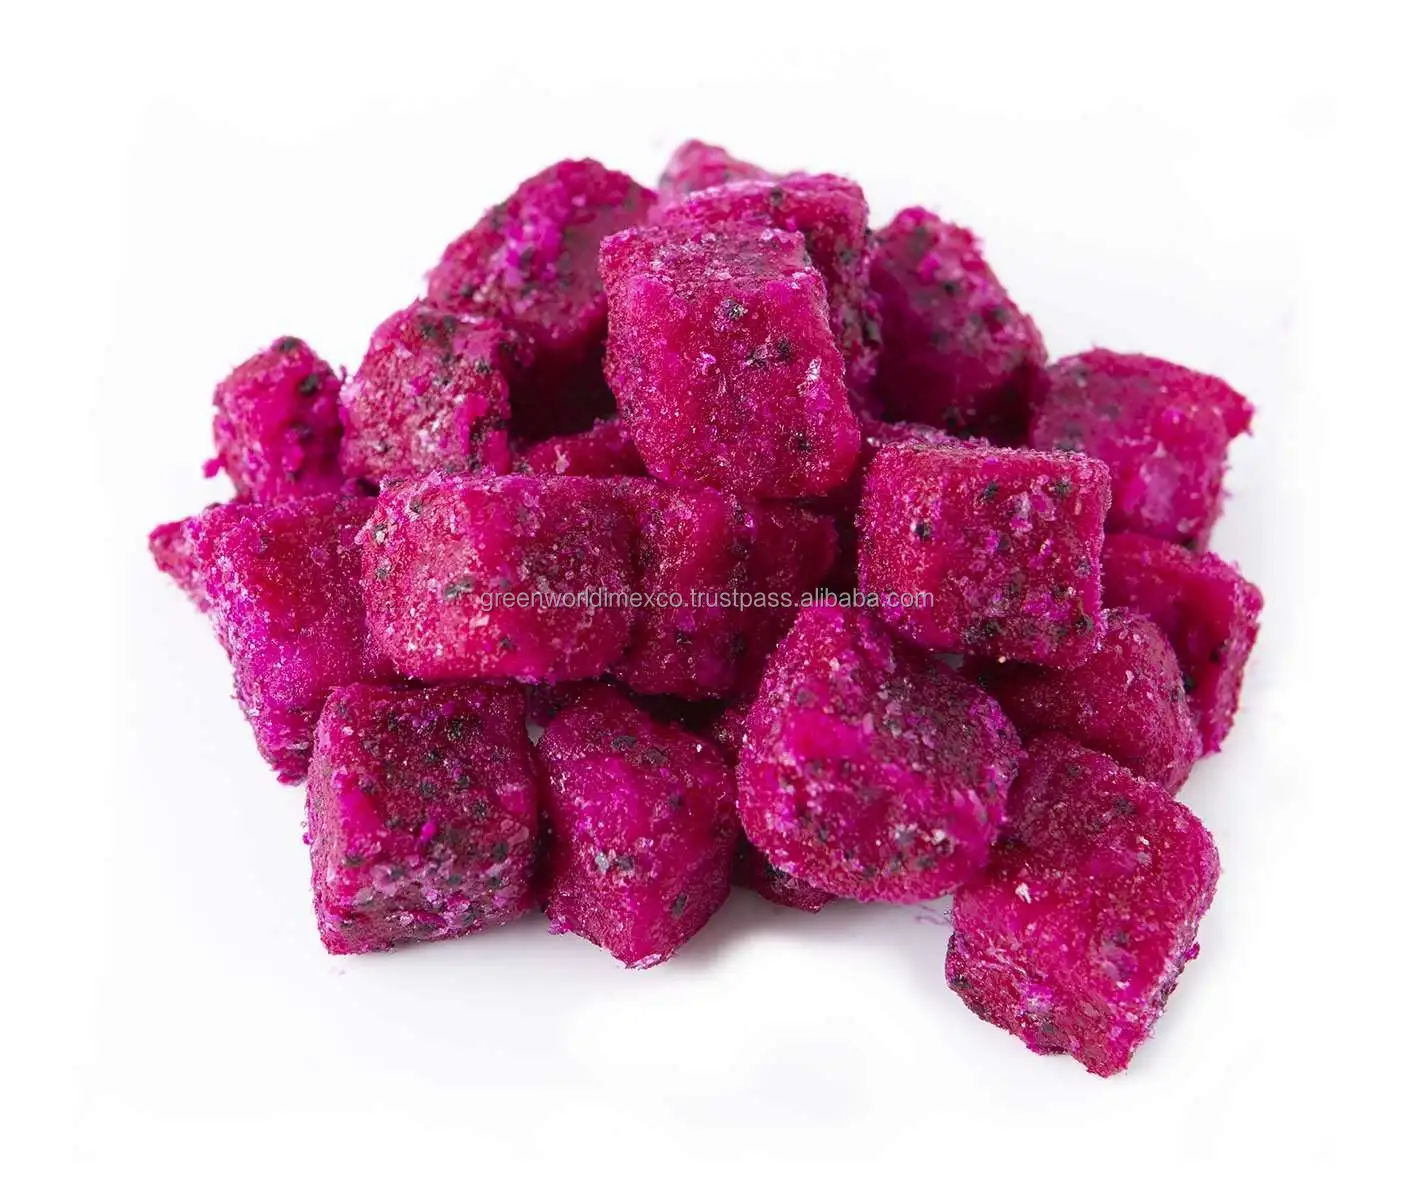 Pitaya rosa do dragon frozen/iqf, com o mais baixo preço do vietnã-dado vermelho congelado de frutas/cubo ou halvas